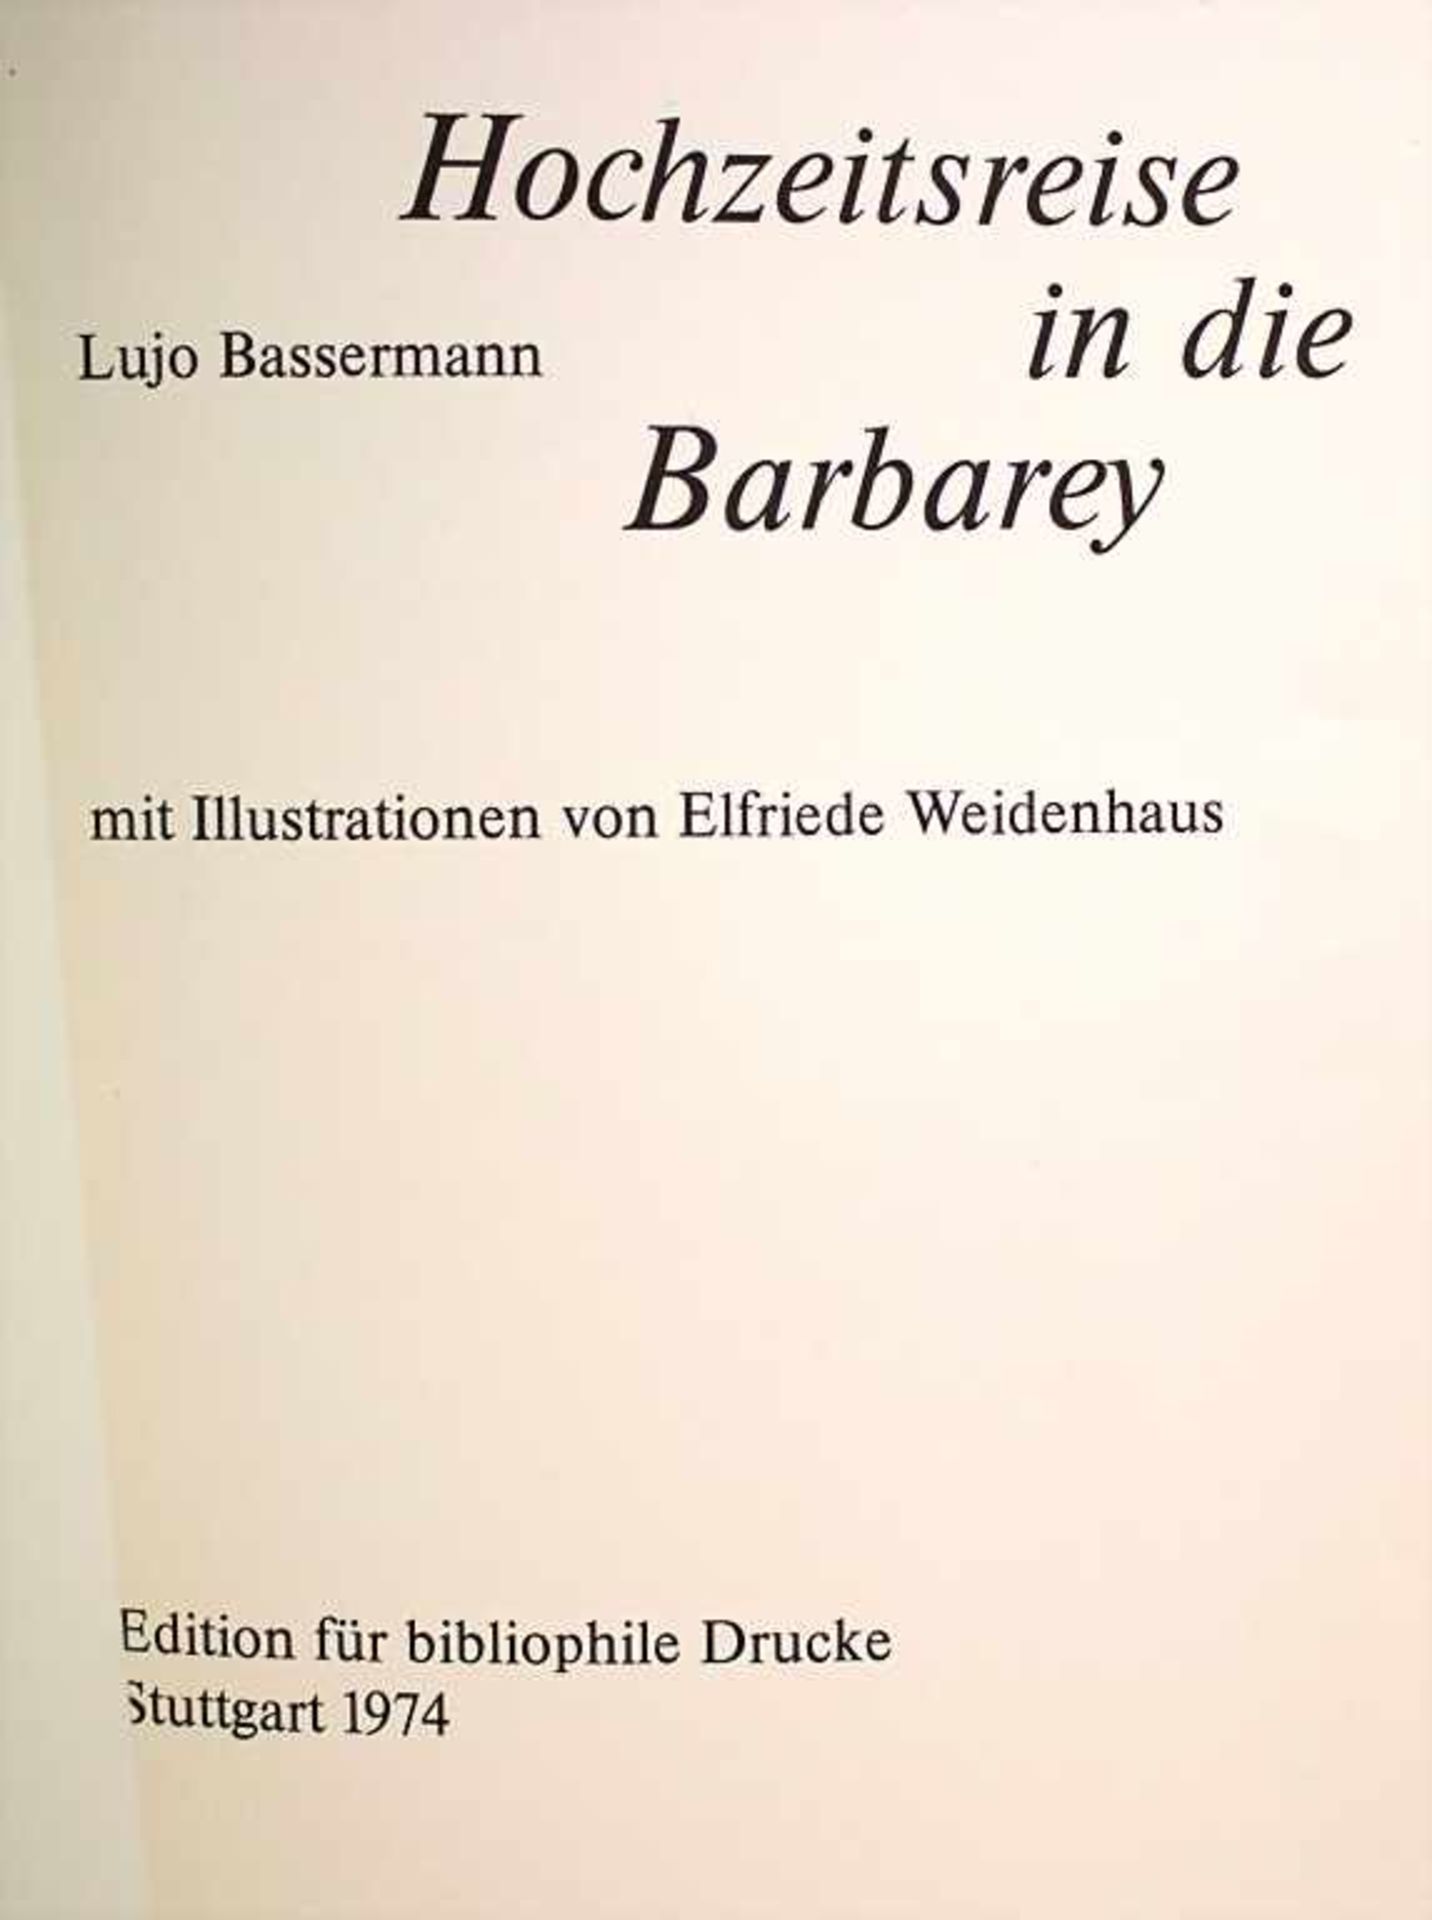 Lujo Bassermann: 3 Ausgaben 'Hochzeitsreise in die Barbarey', Stuttgart, 1974 - Bild 2 aus 4